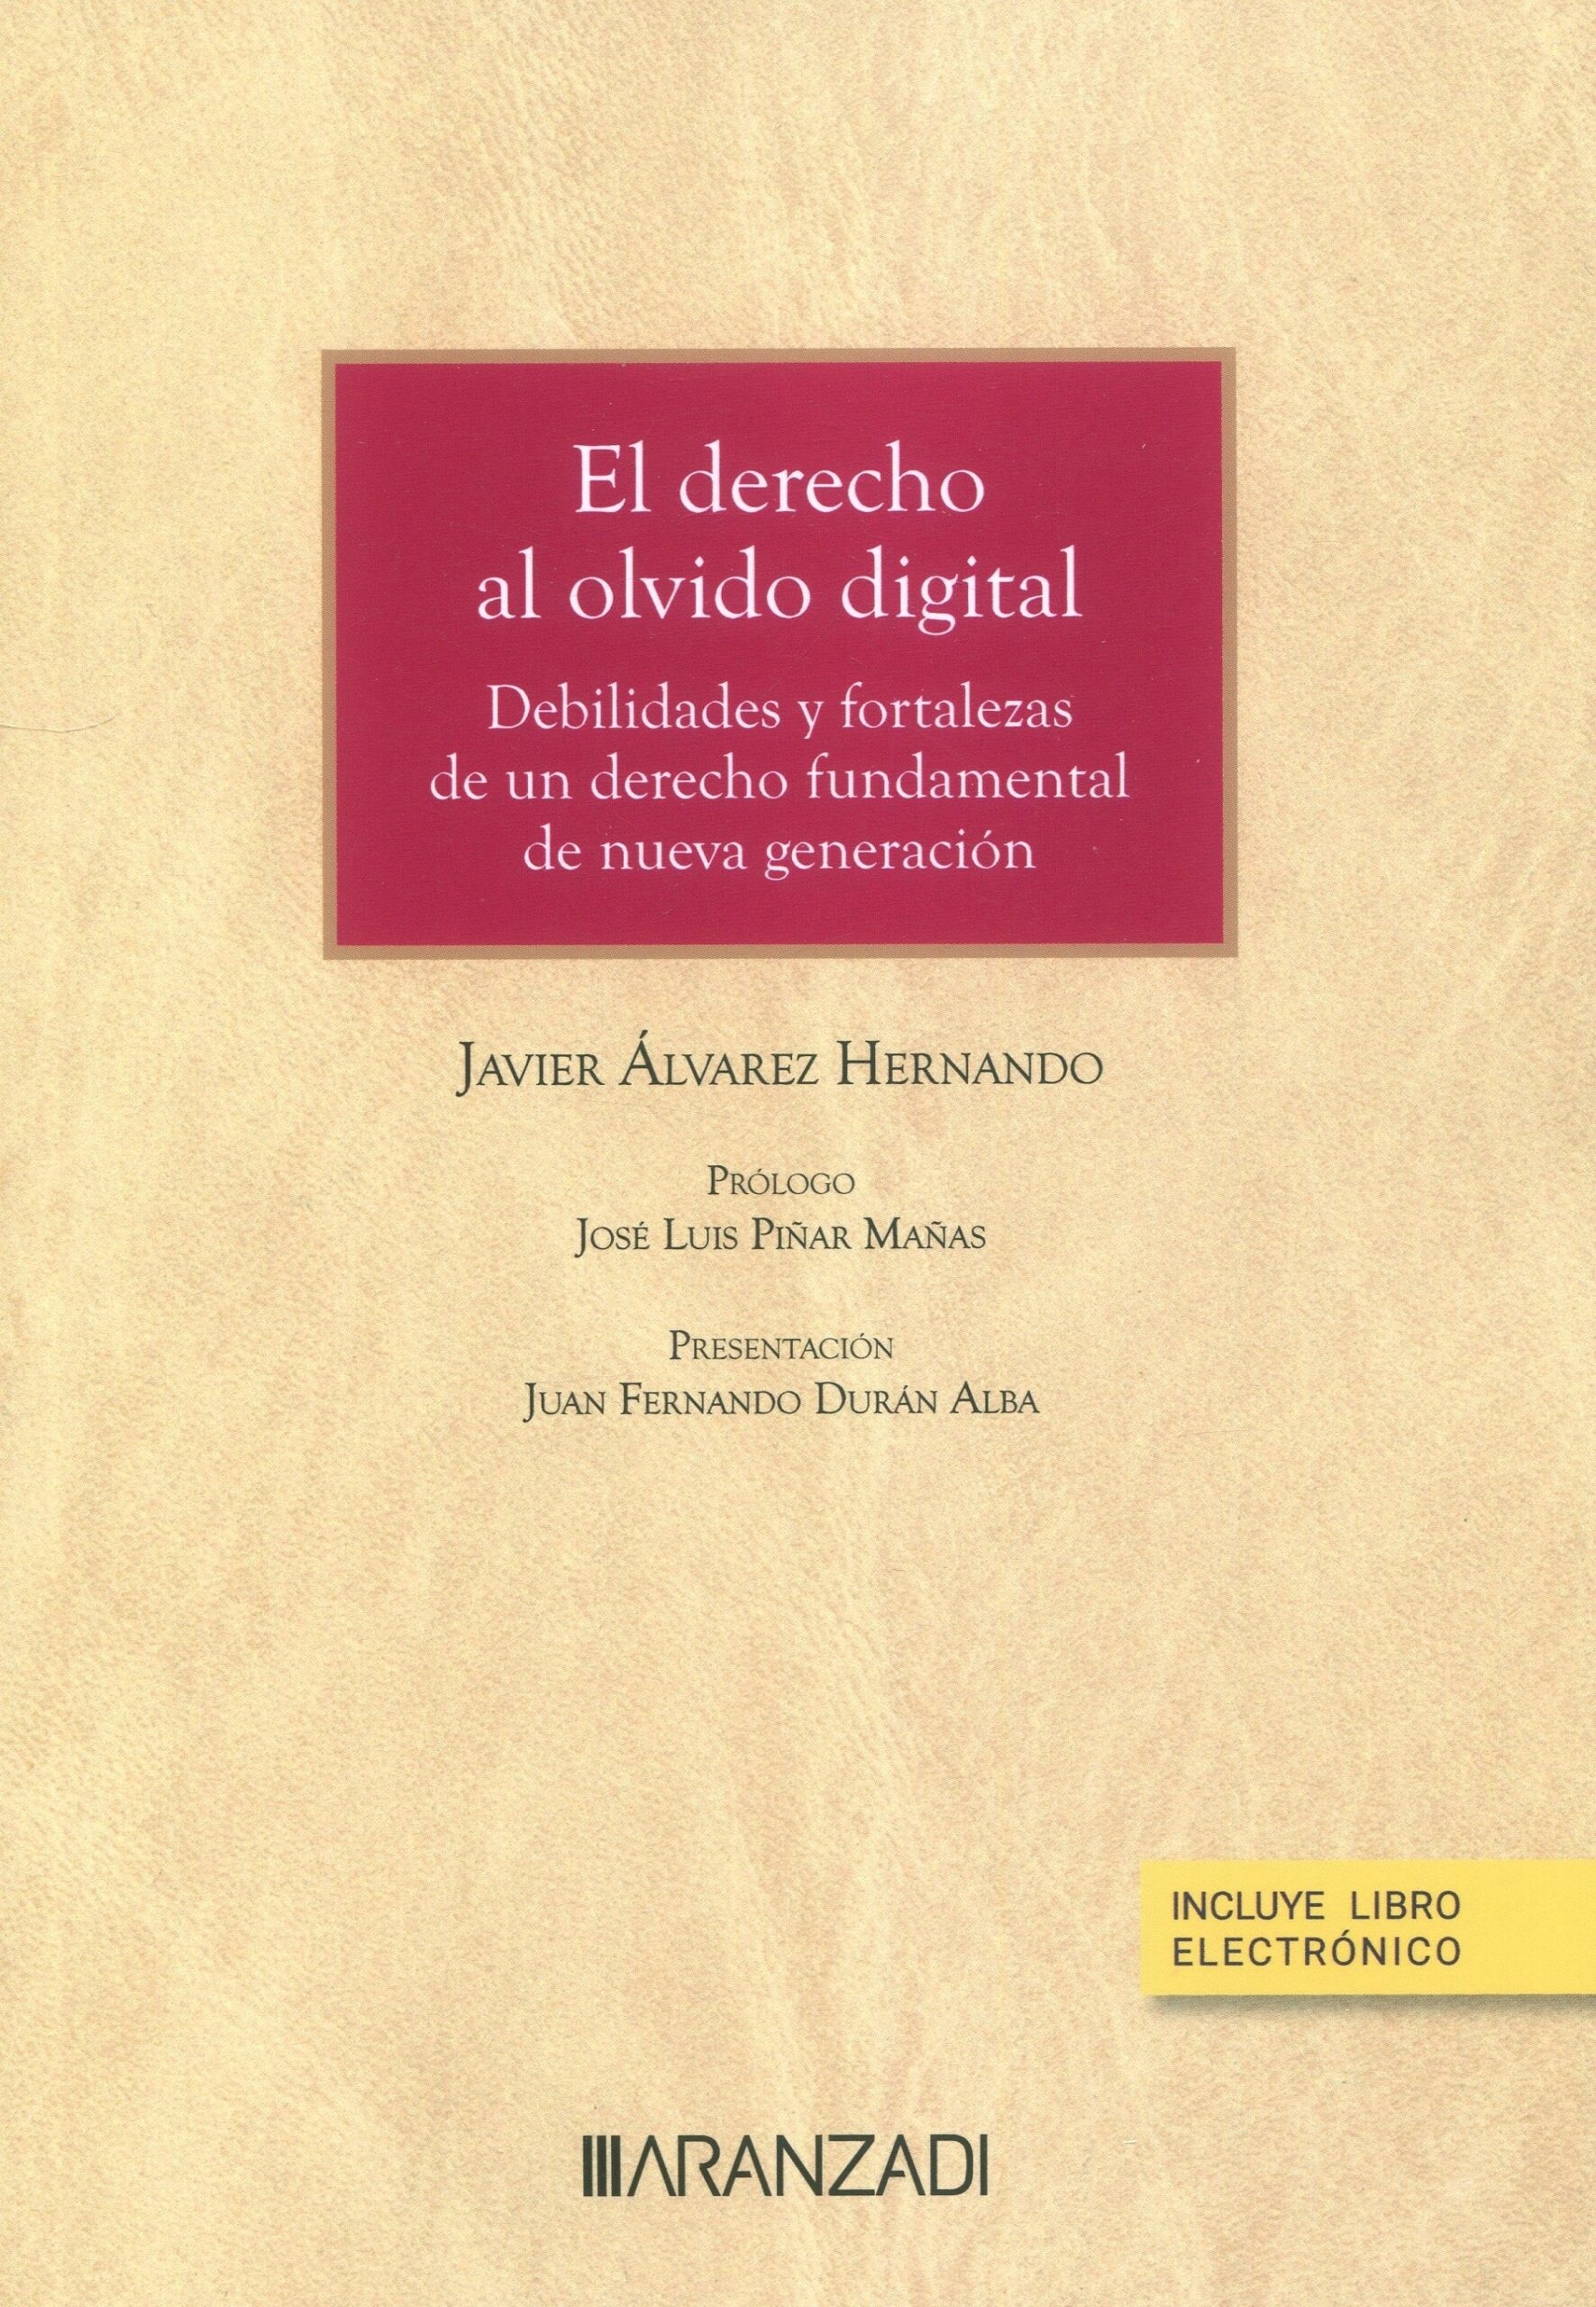 El derecho al olvido digital. "Debilidades y fortalezas de un derecho fundamental de nueva generación"